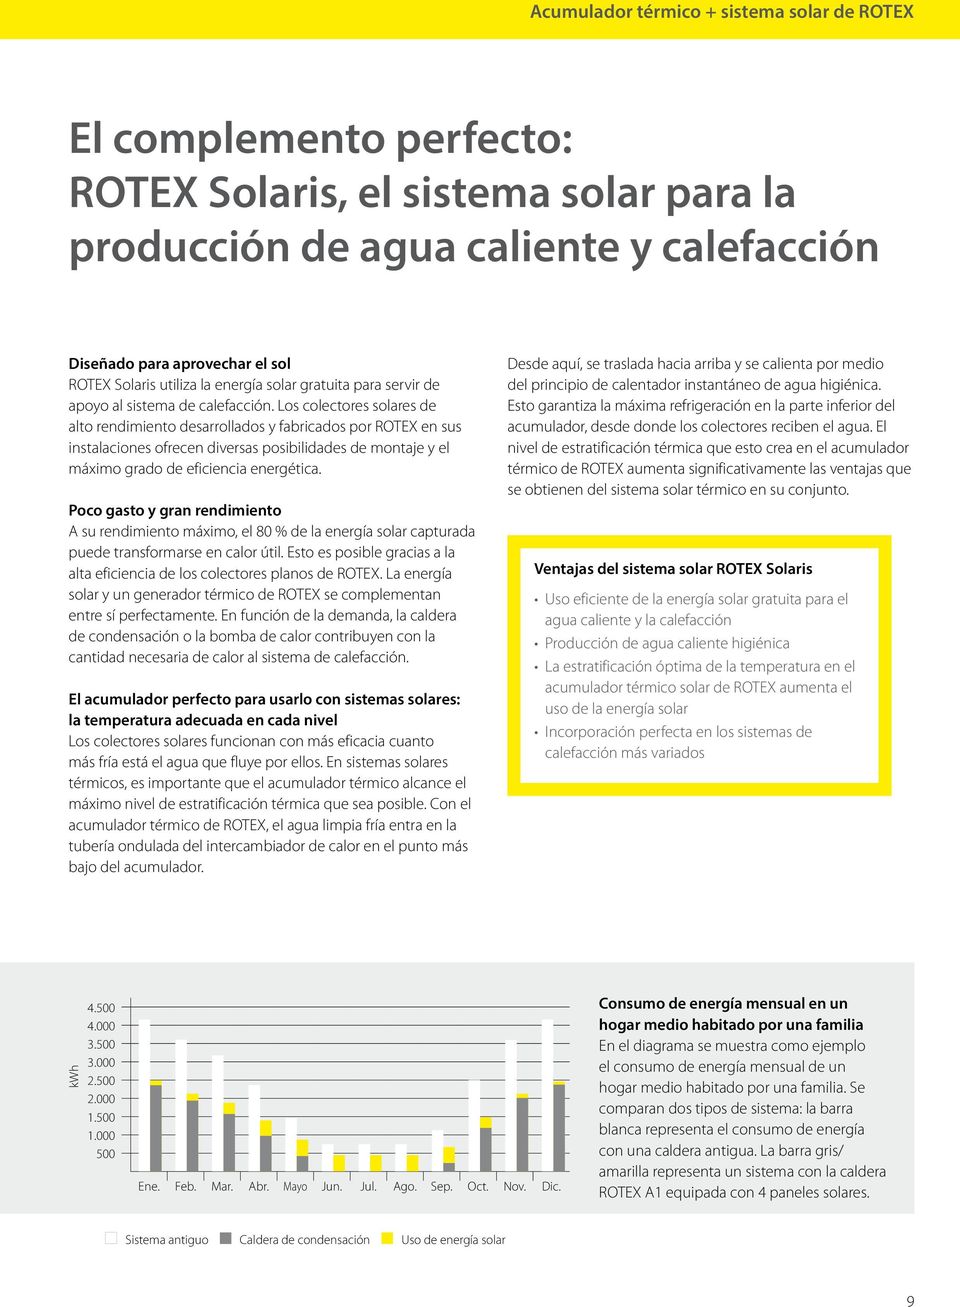 Los colectores solares de alto rendimiento desarrollados y fabricados por ROTEX en sus instalaciones ofrecen diversas posibilidades de montaje y el máximo grado de eficiencia energética.